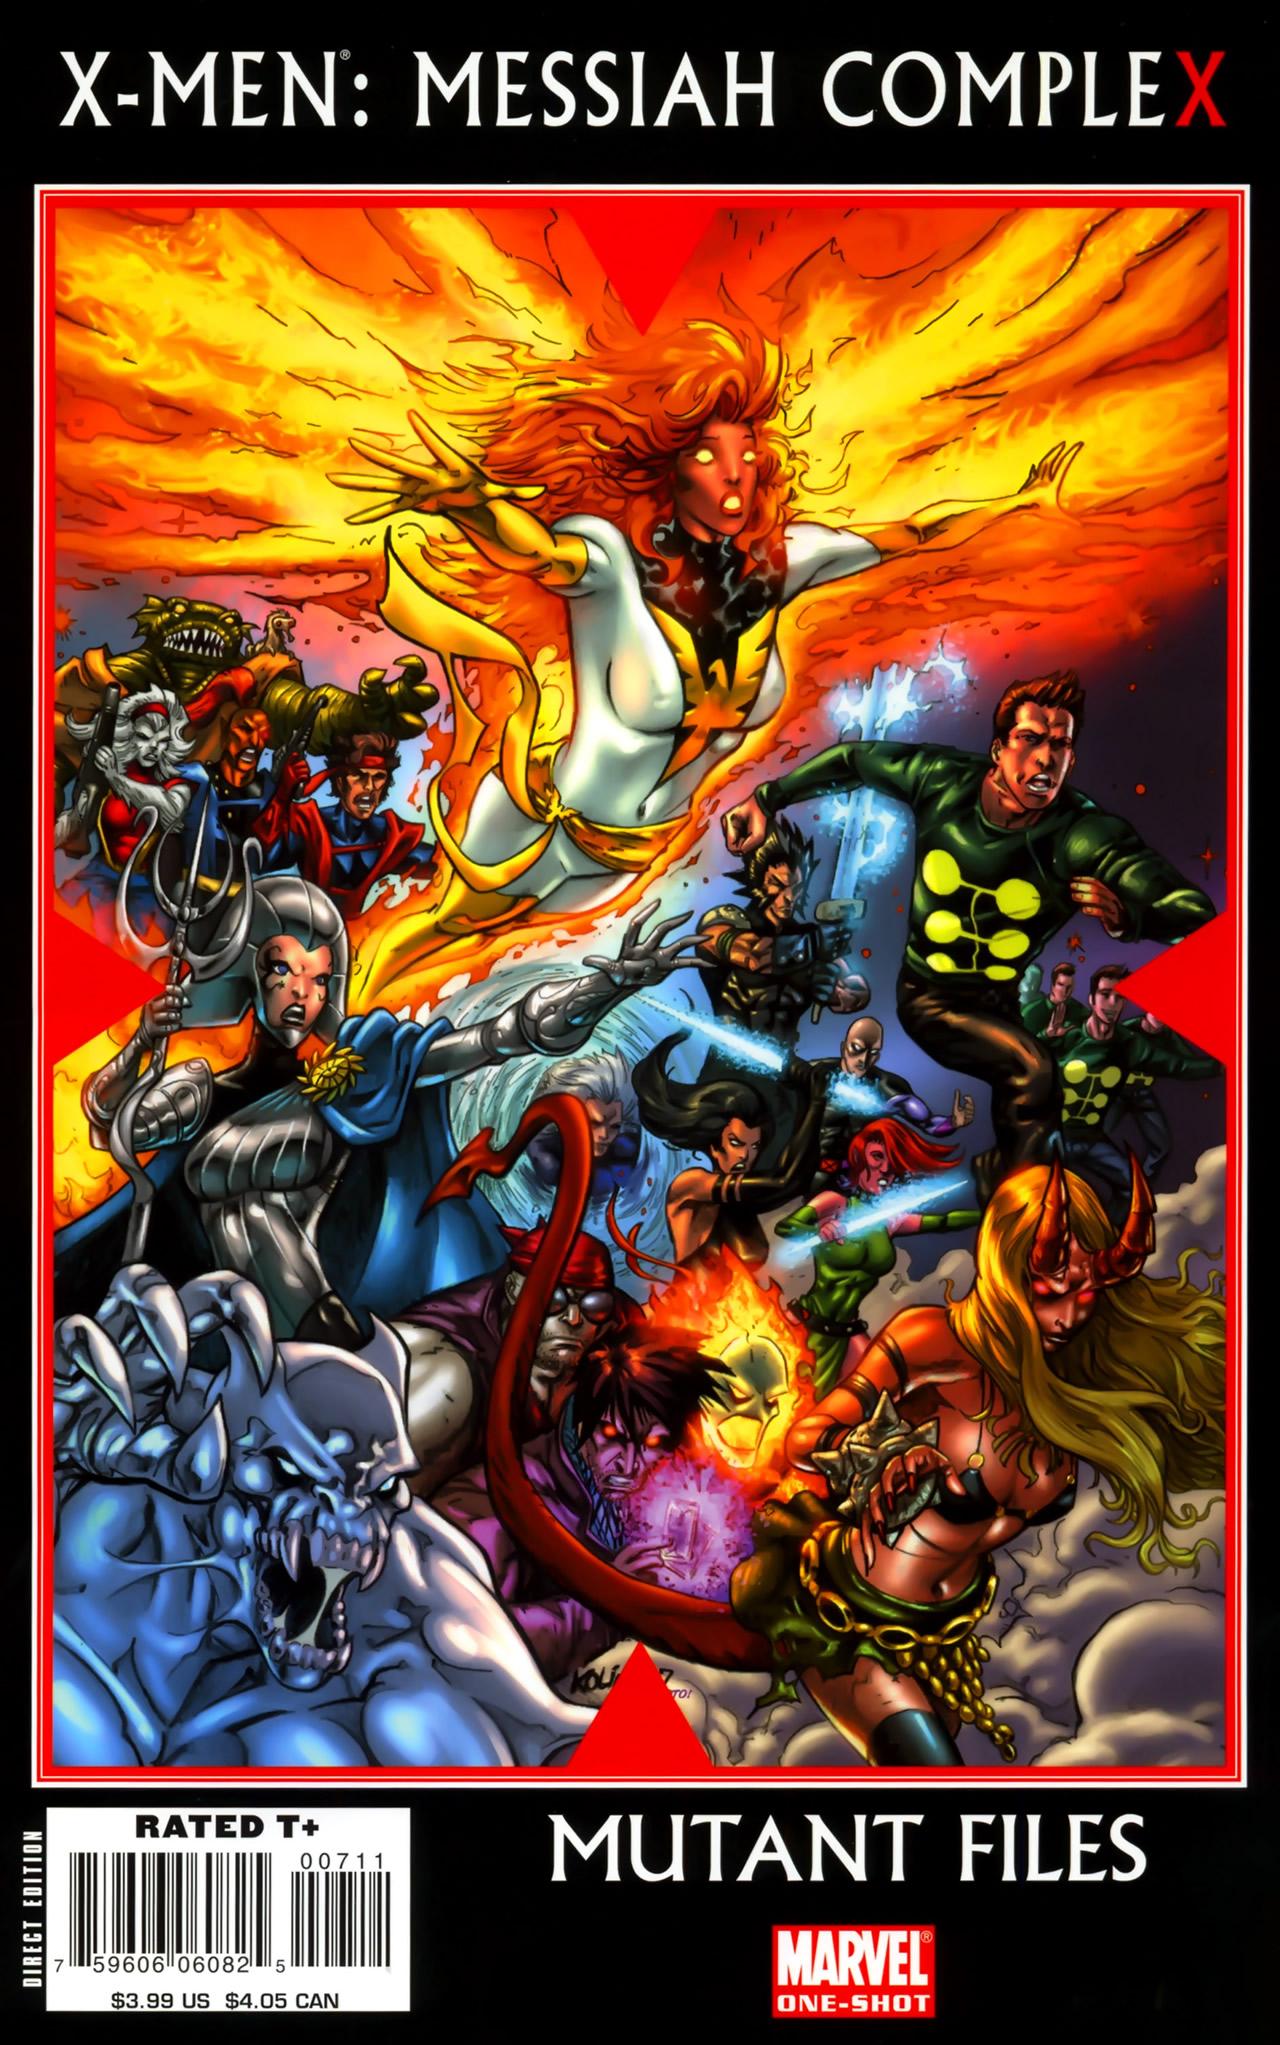 X-Men: Messiah Complex - Mutant Files Vol. 1 #1